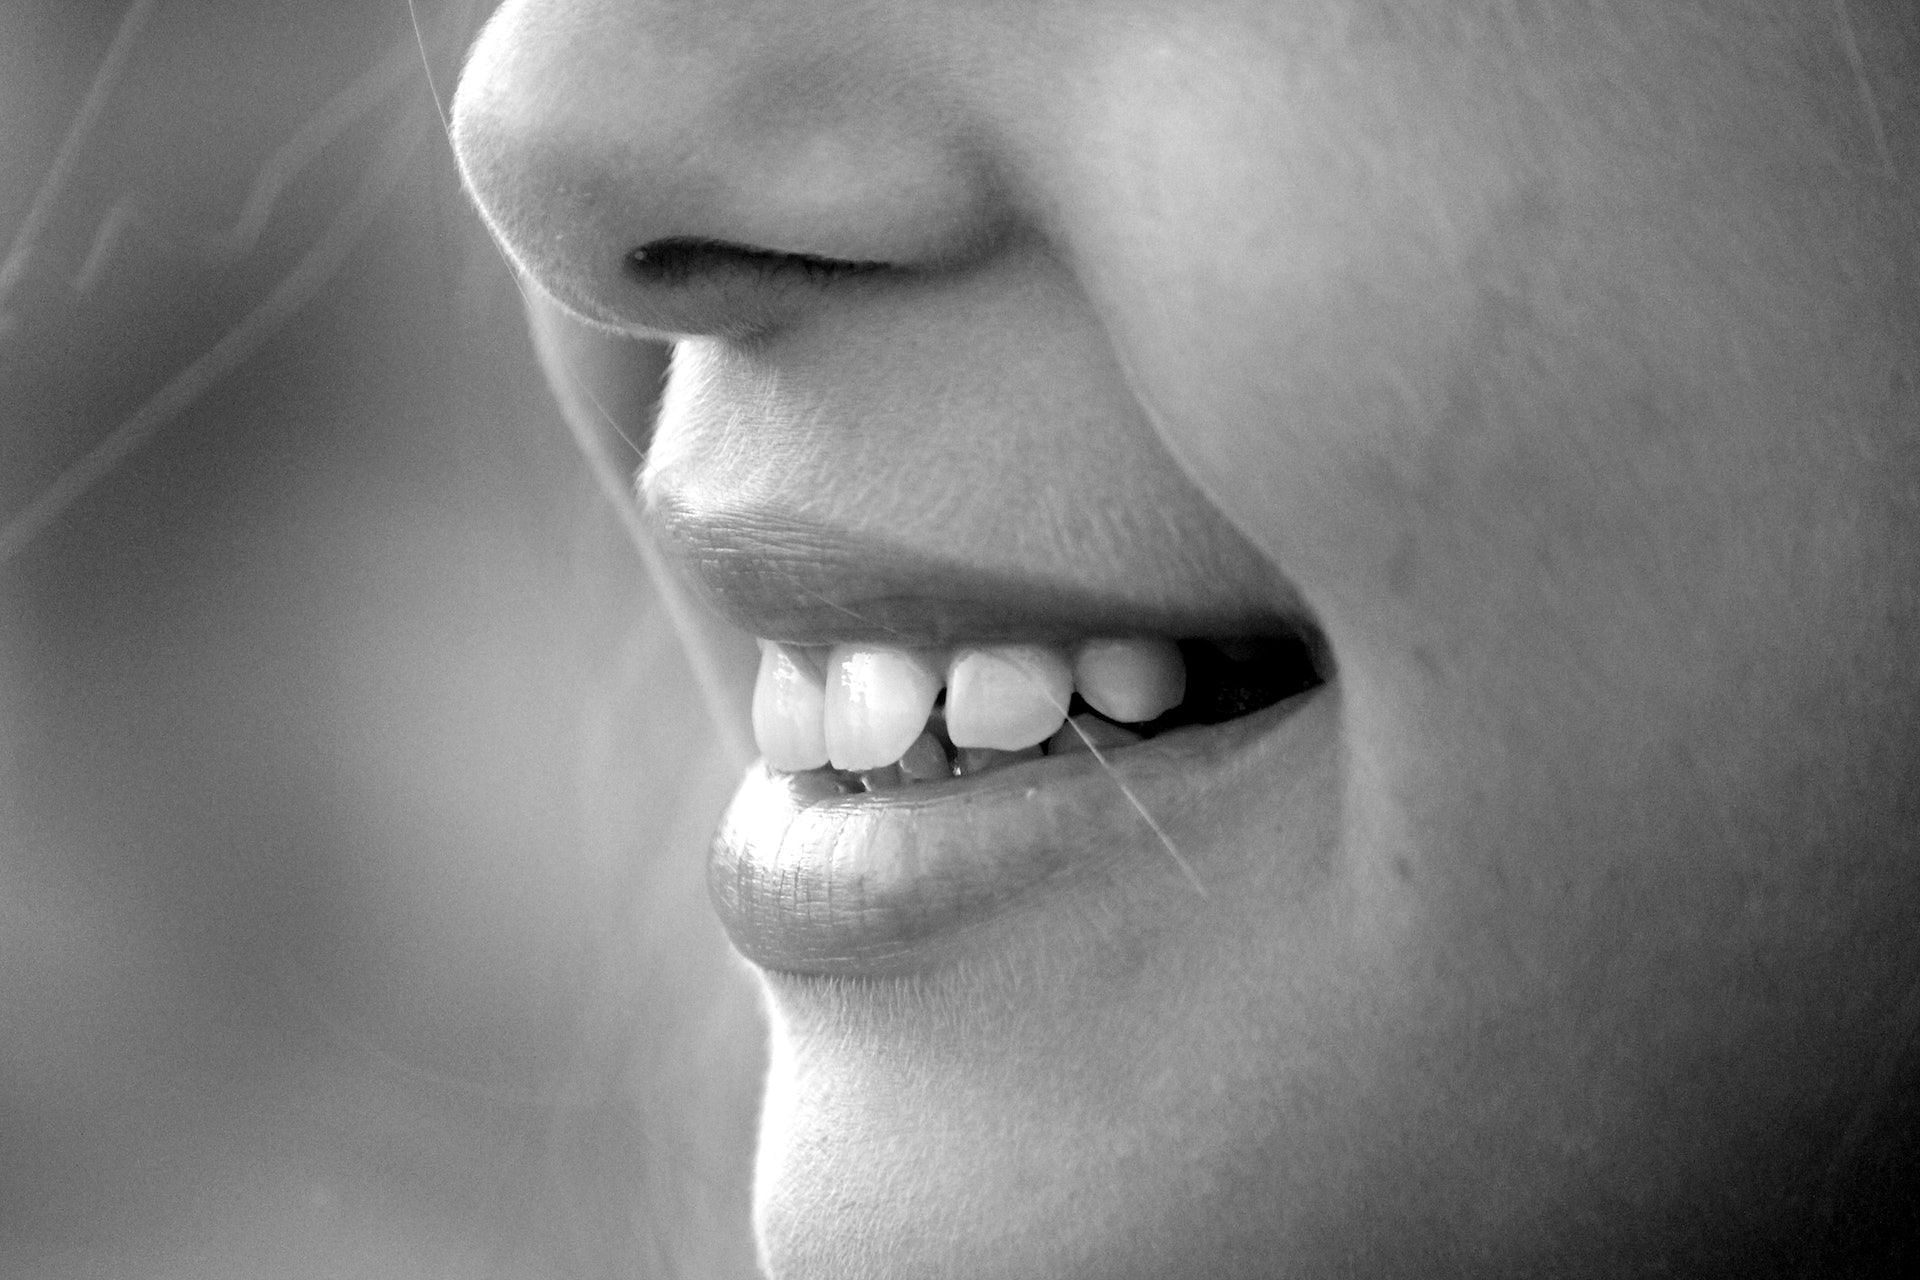 Malabar plums keep teeth and gums healthy. (Photo via Pexels/Pixabay)